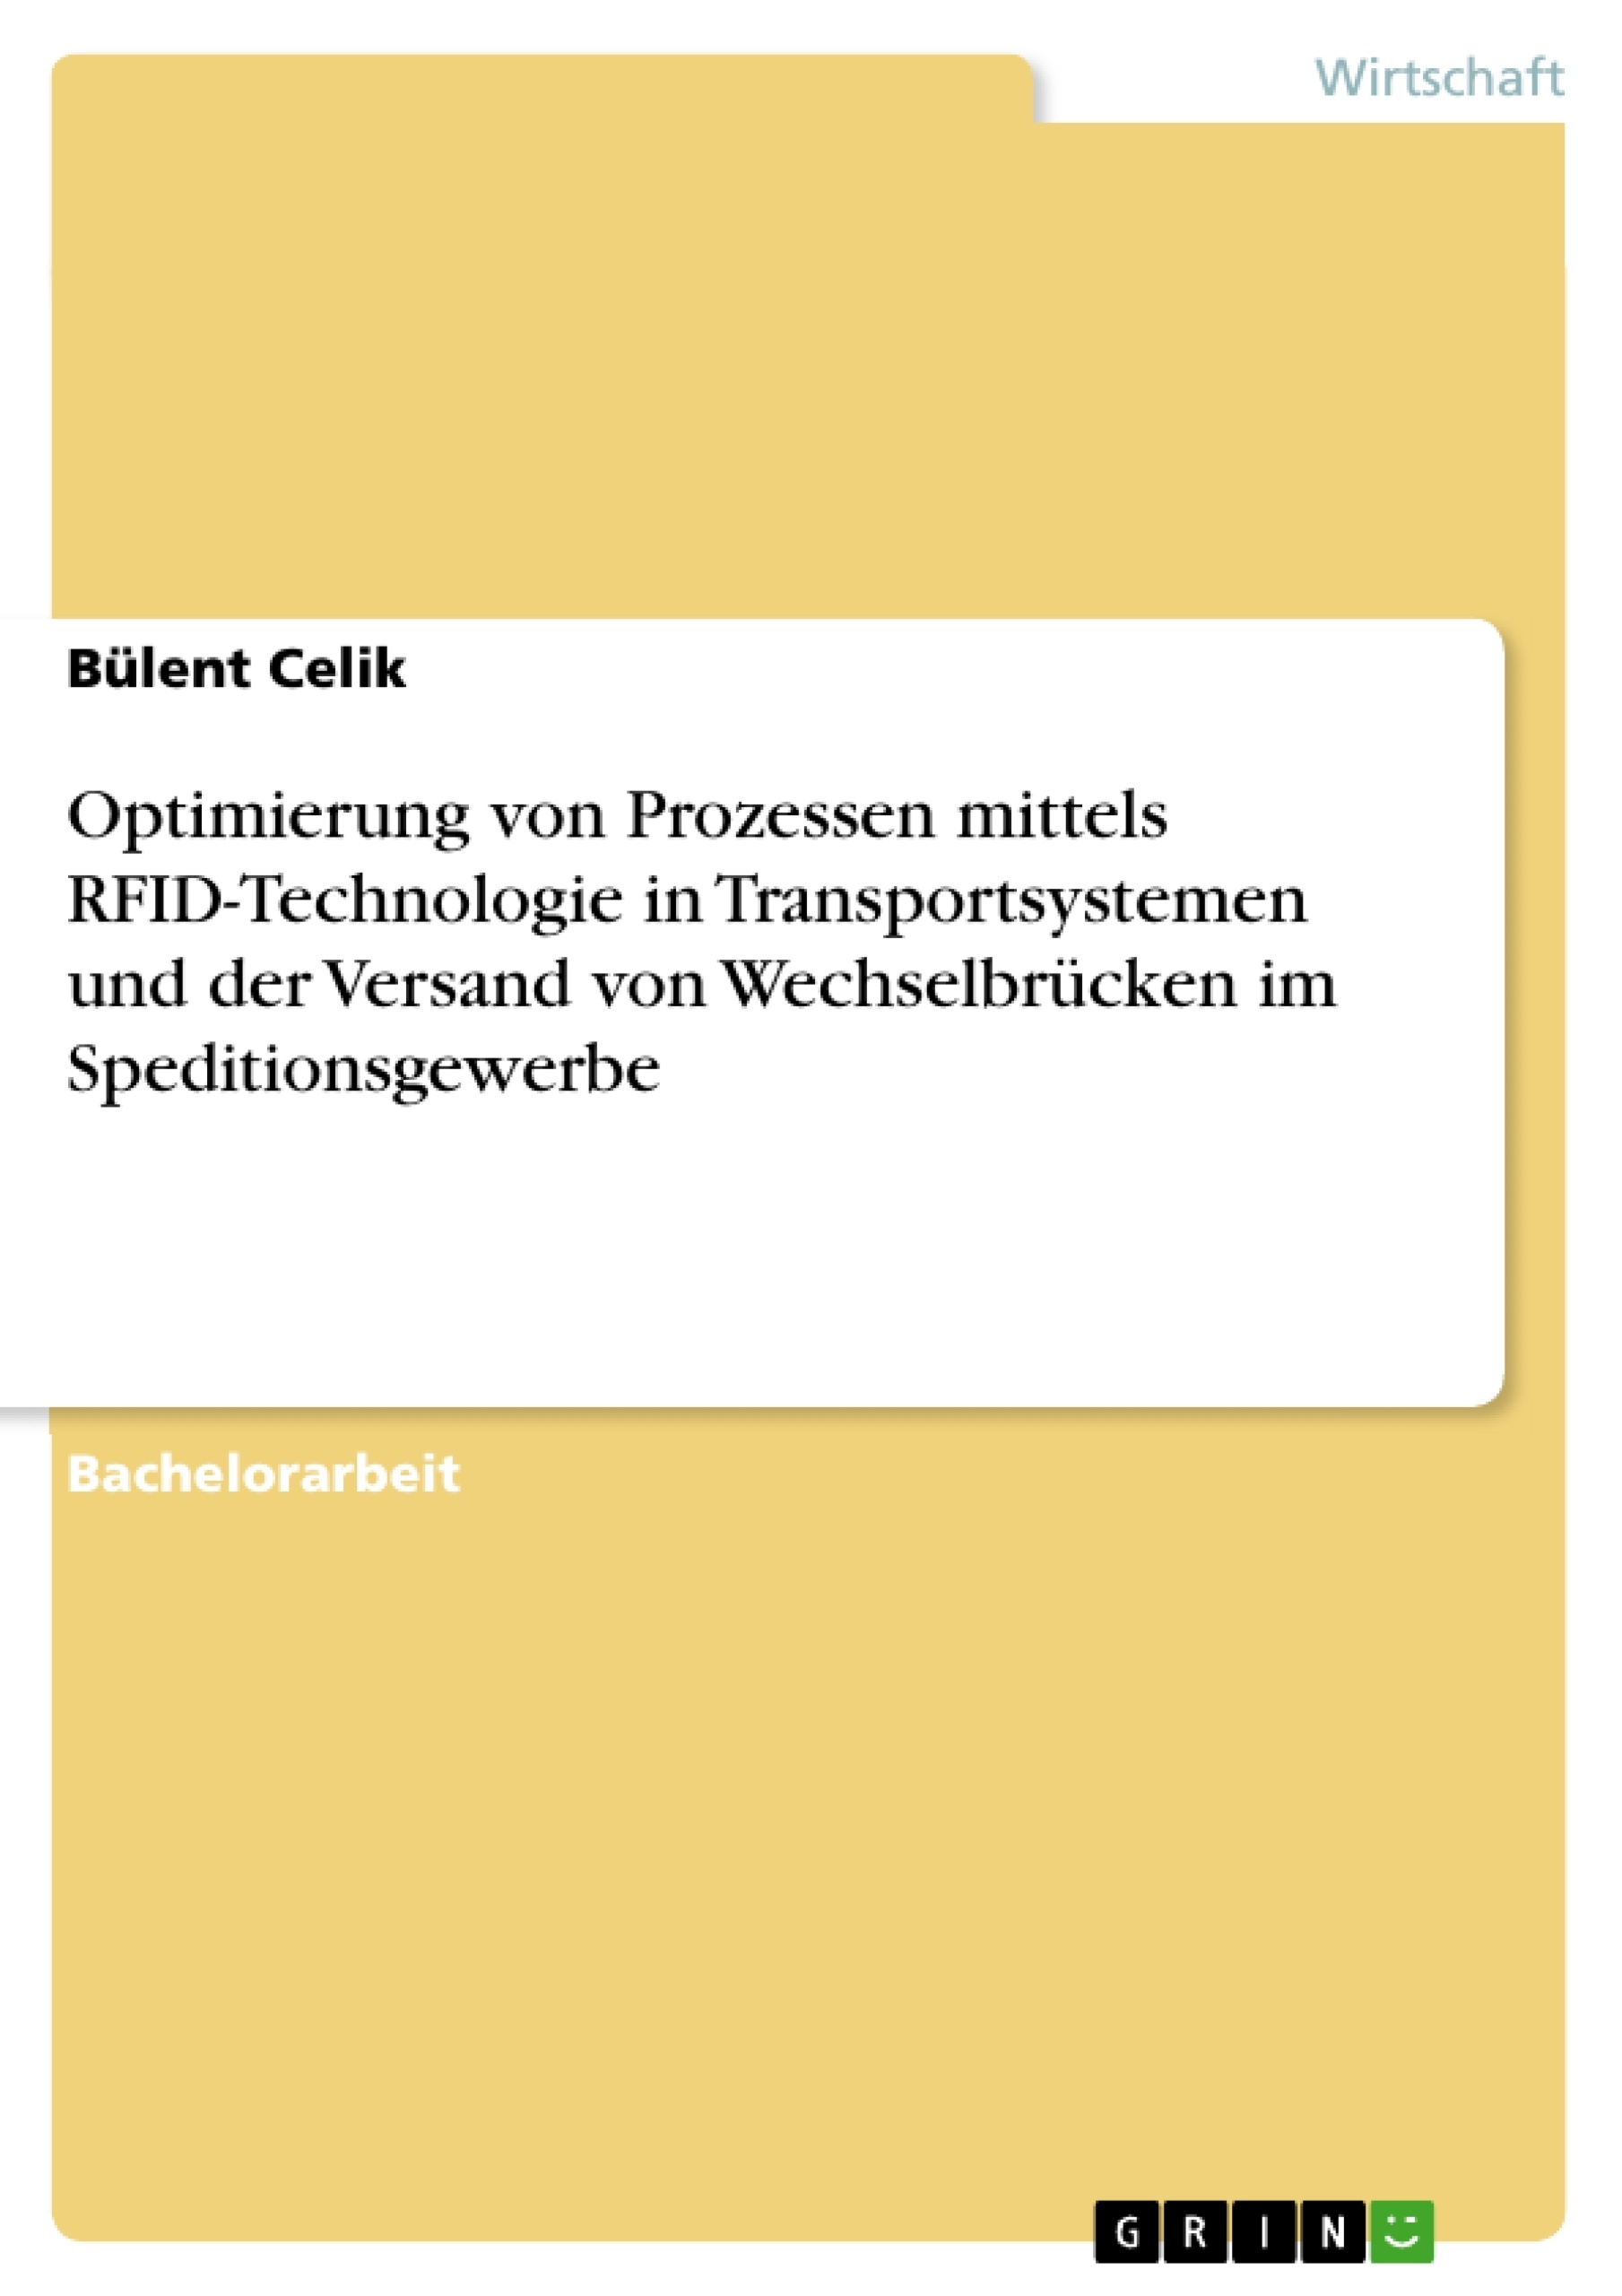 Titel: Optimierung von Prozessen mittels RFID-Technologie in Transportsystemen und der Versand von Wechselbrücken im Speditionsgewerbe